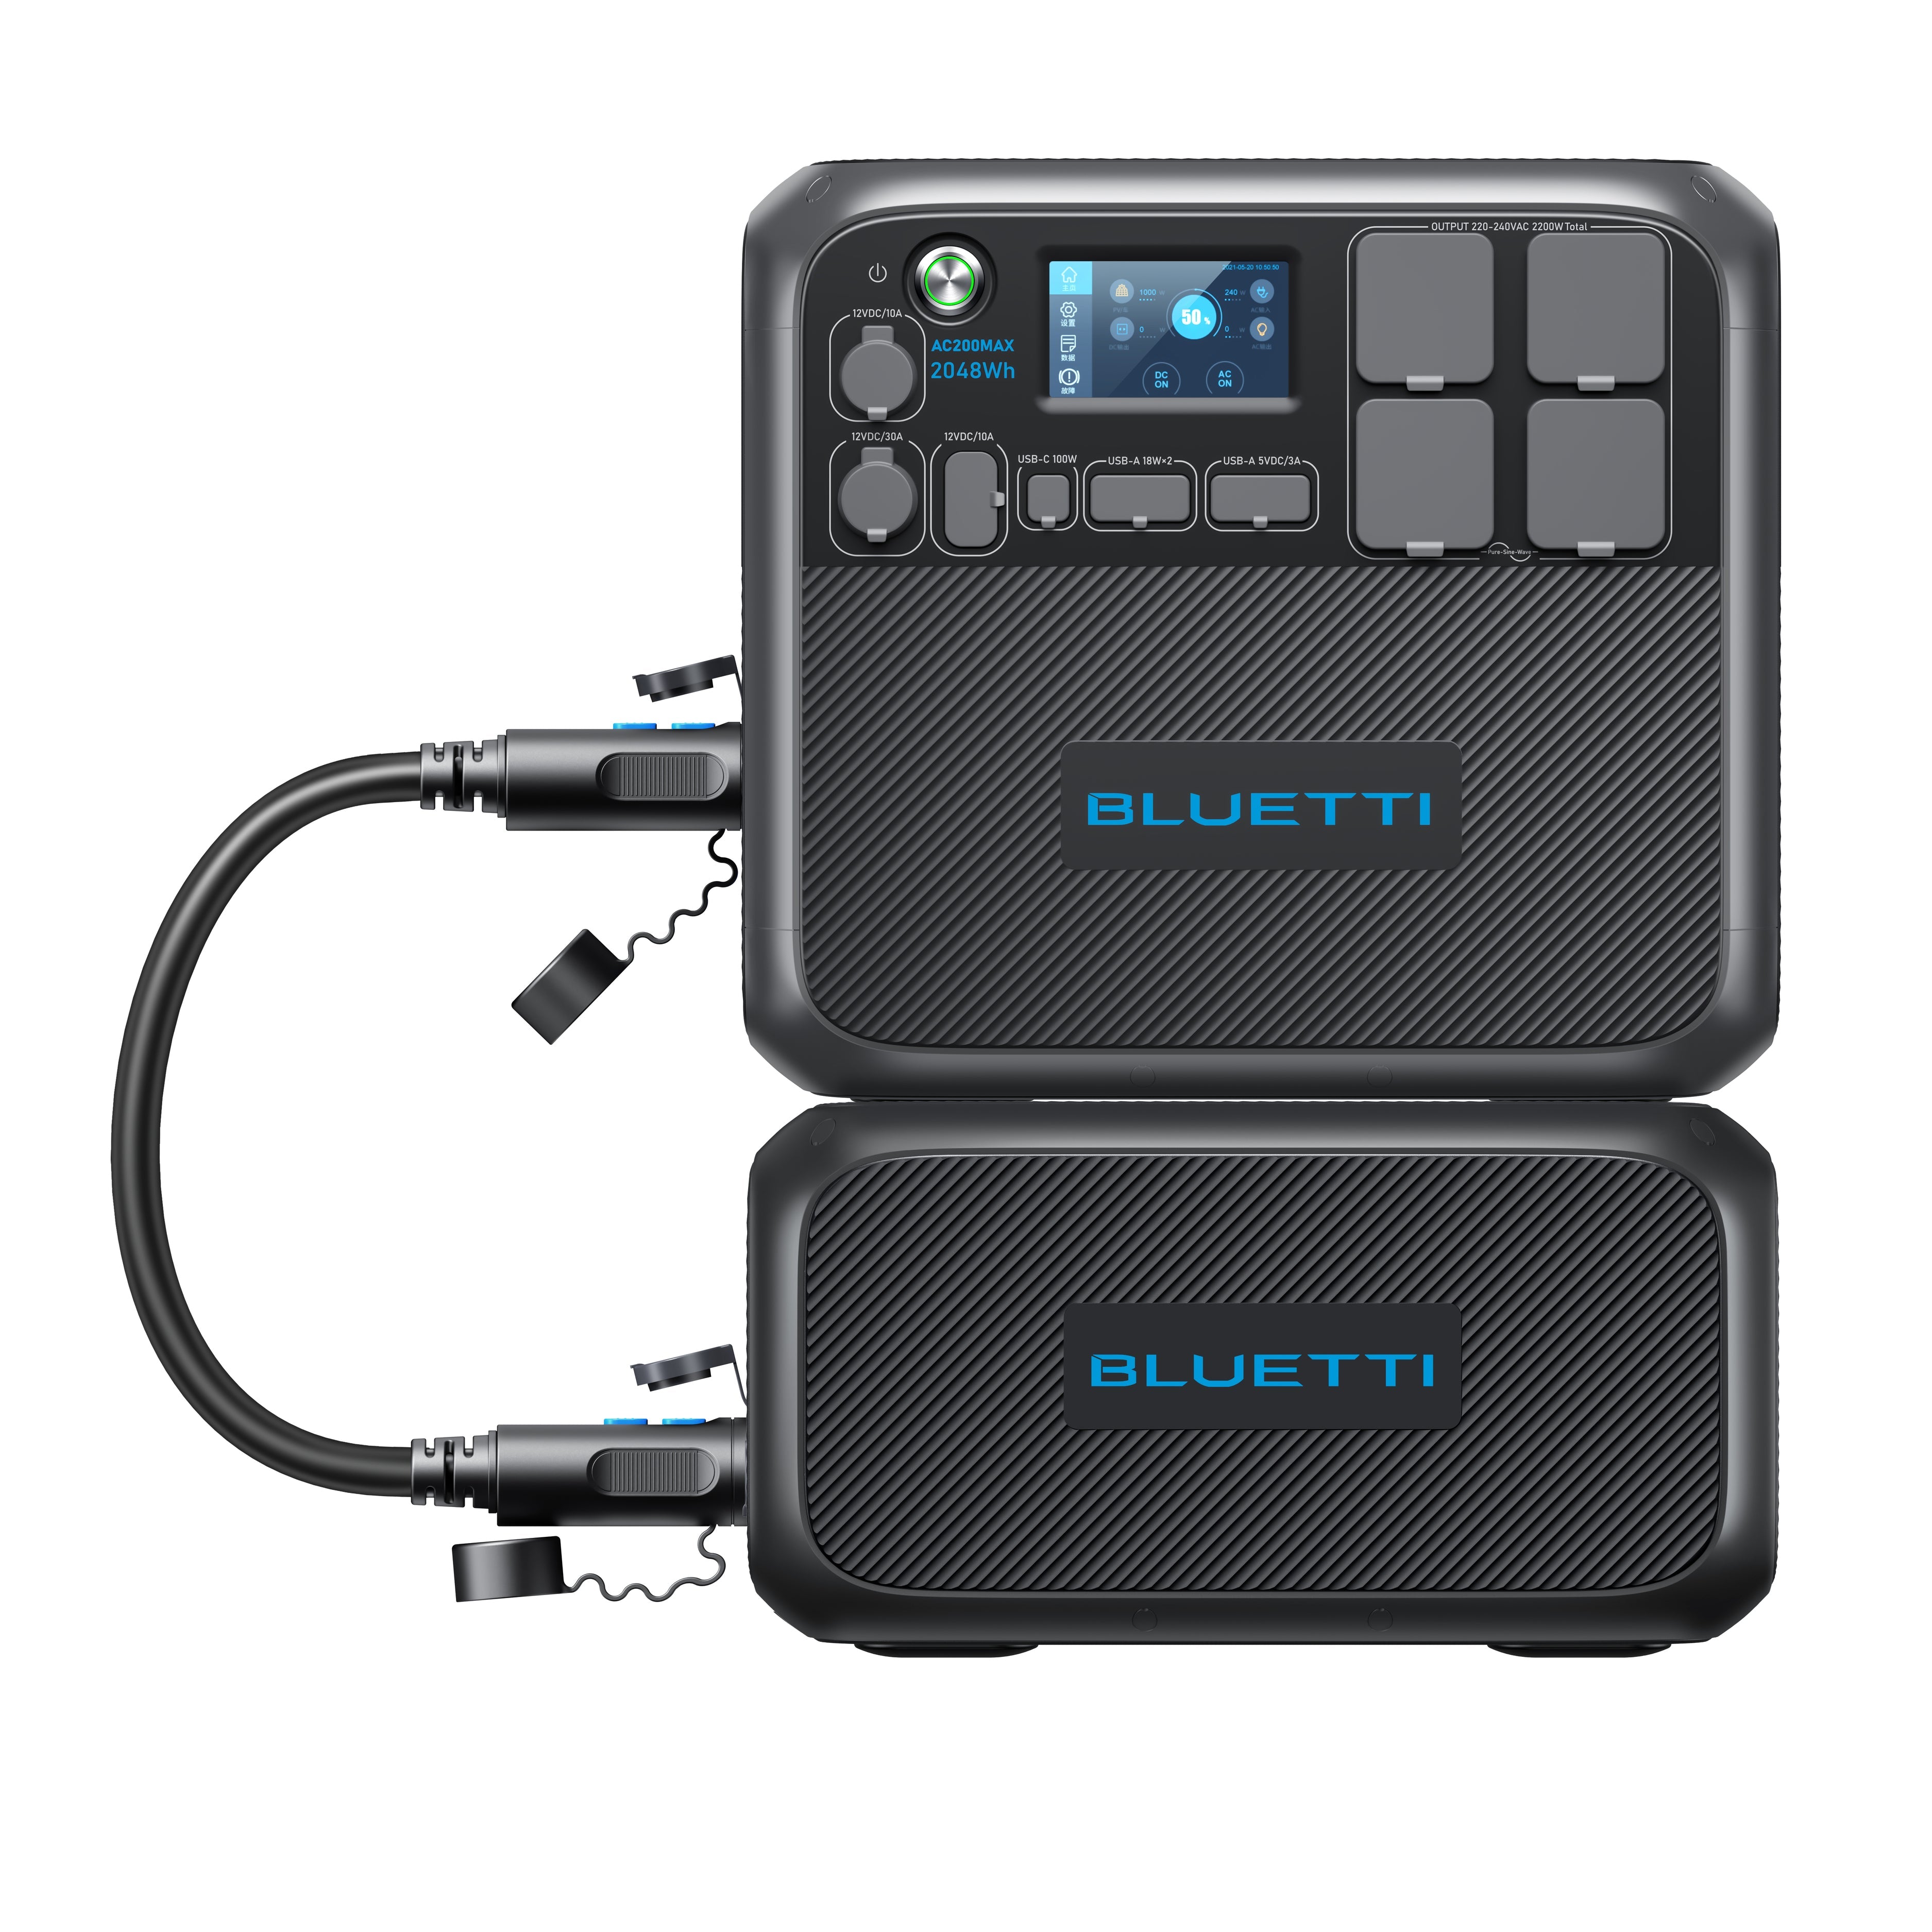 Bluetti B230 2048Wh expansionsbatteri - ökad kapacitet för ditt energisystem